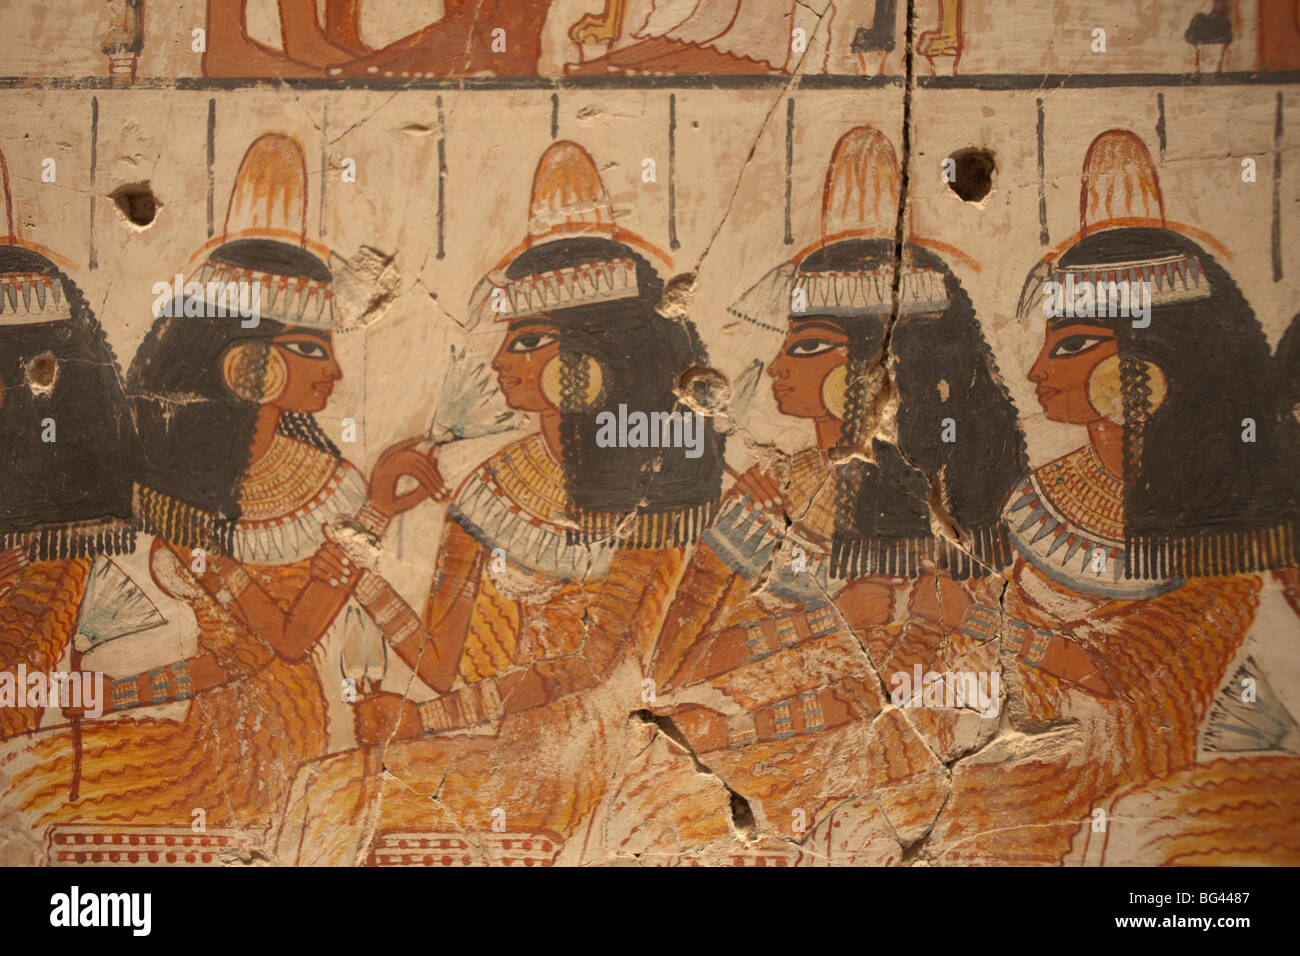 L'Angleterre, Londres, British Museum, peinture murale d'invités au banquet de la chapelle du tombeau de Nebamun Luxor 1350BC Banque D'Images